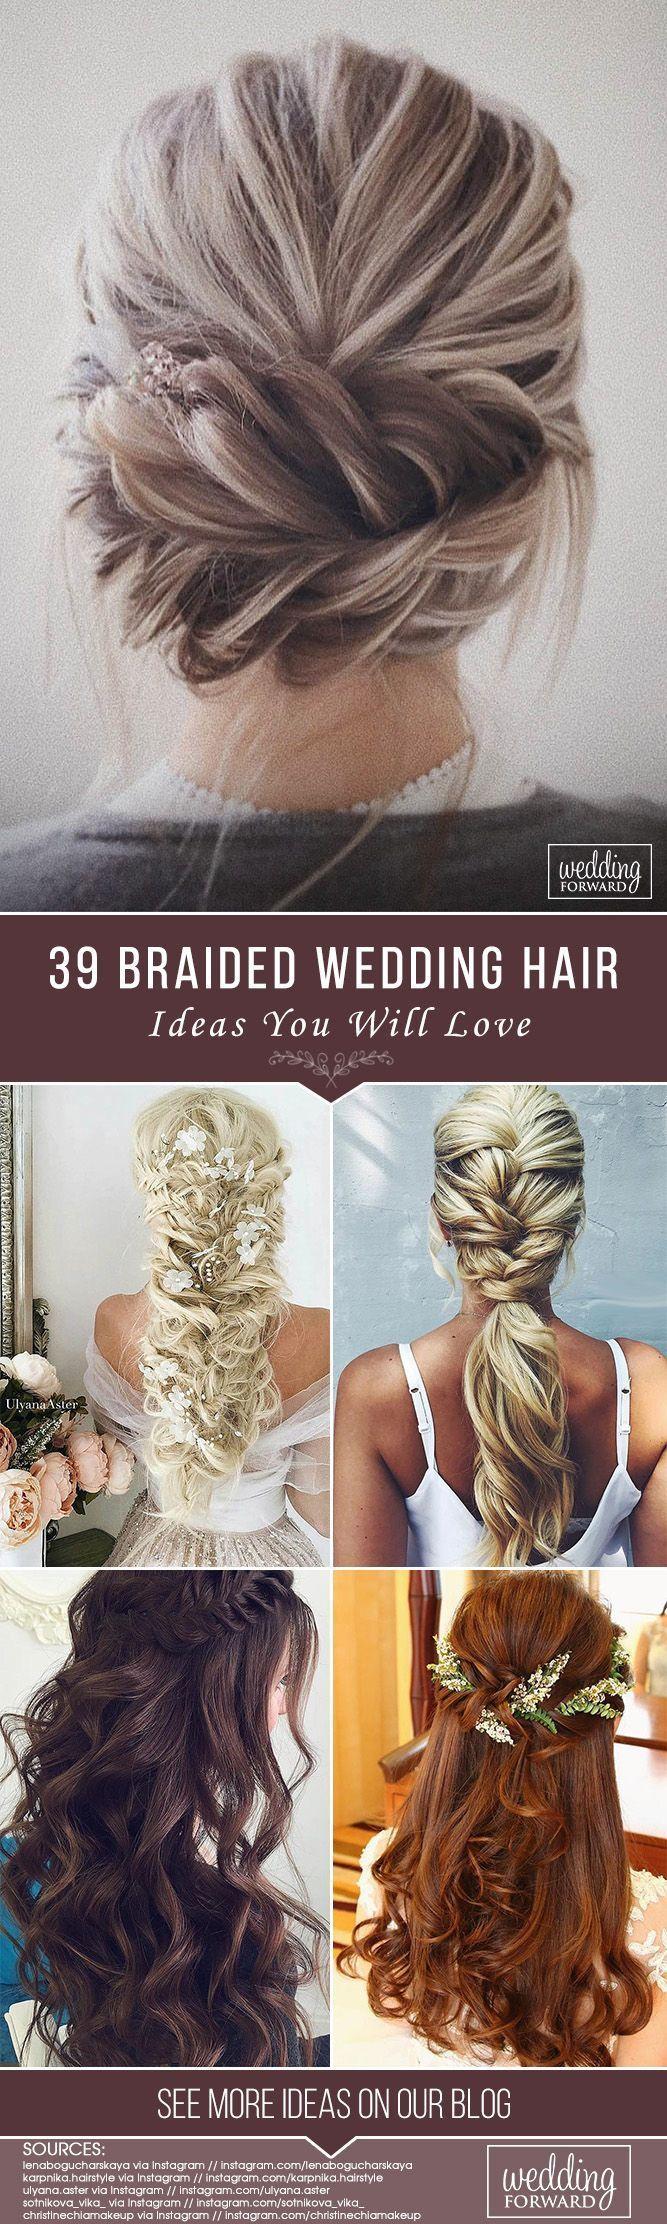 Wedding - 39 Braided Wedding Hair Ideas You Will Love